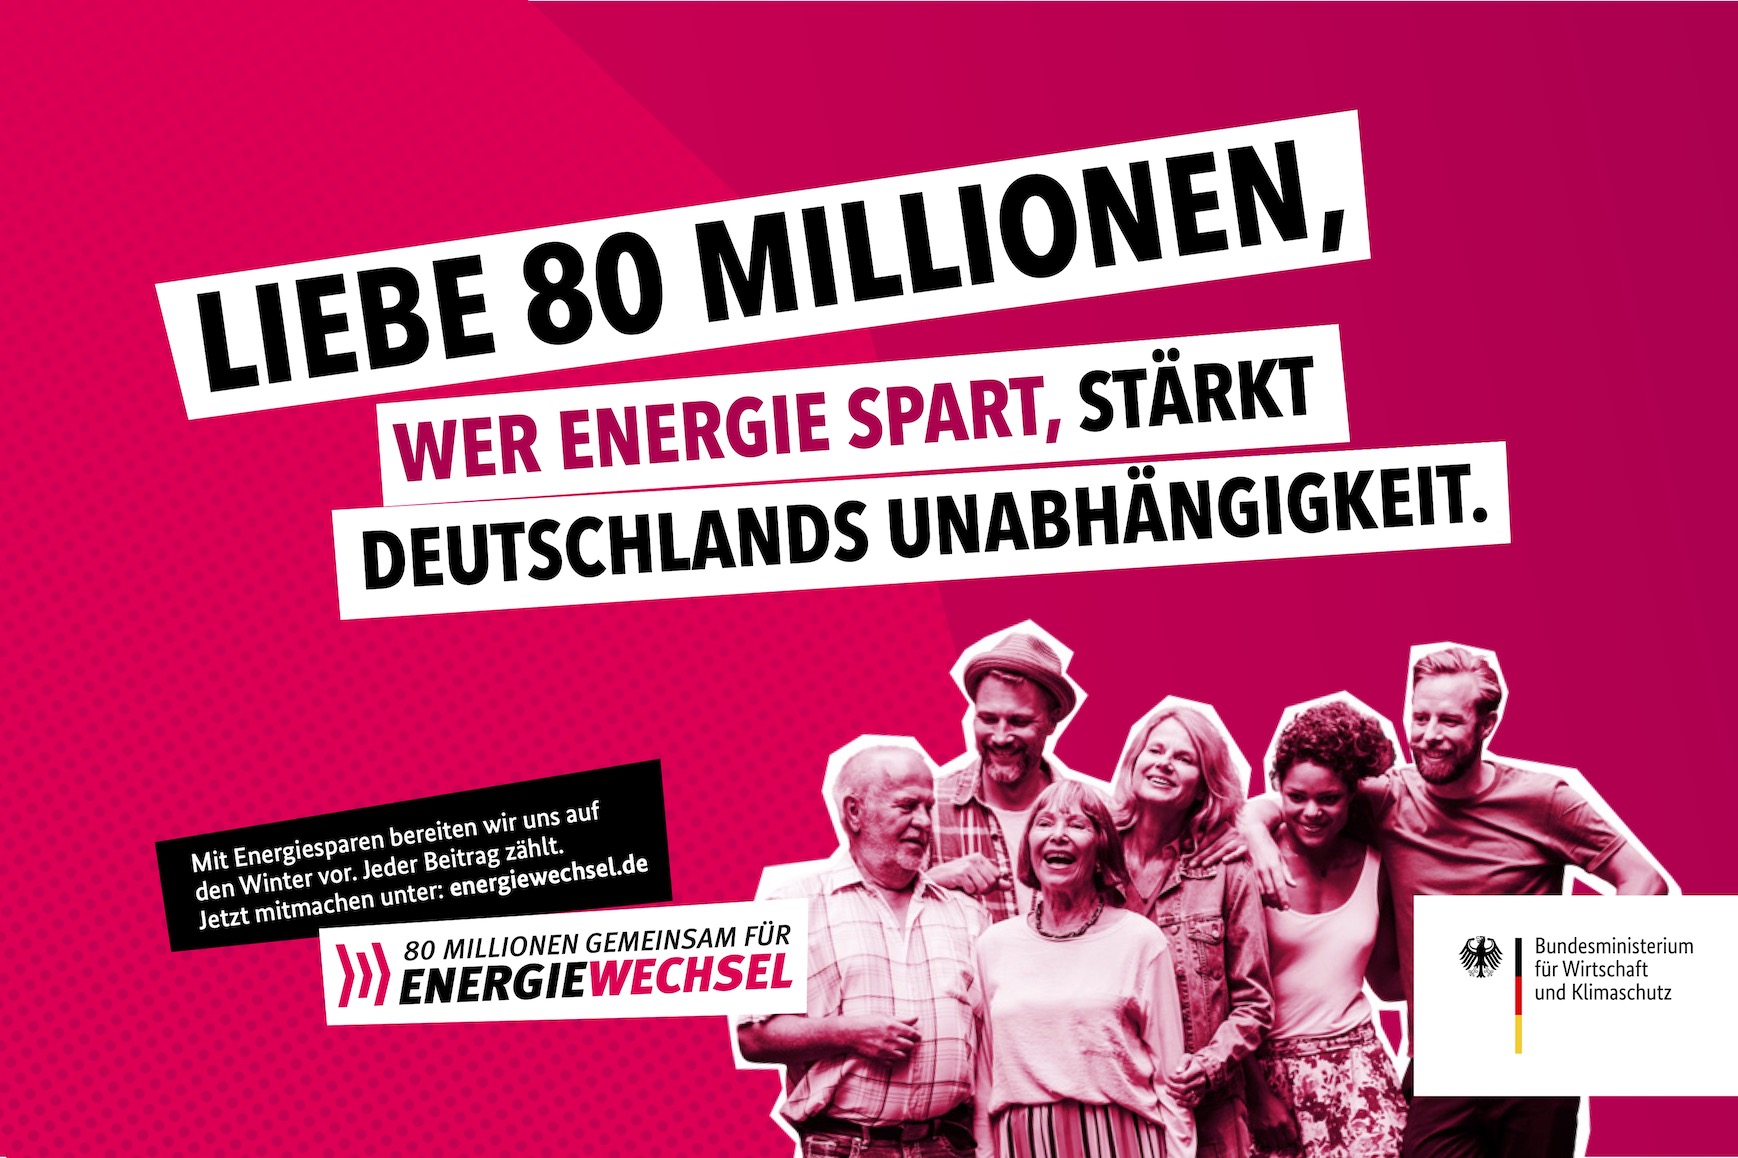 Kampagnenmotiv "Liebe 80 Millionen" | 80 Millionen gemeinsam für Energiewechsel